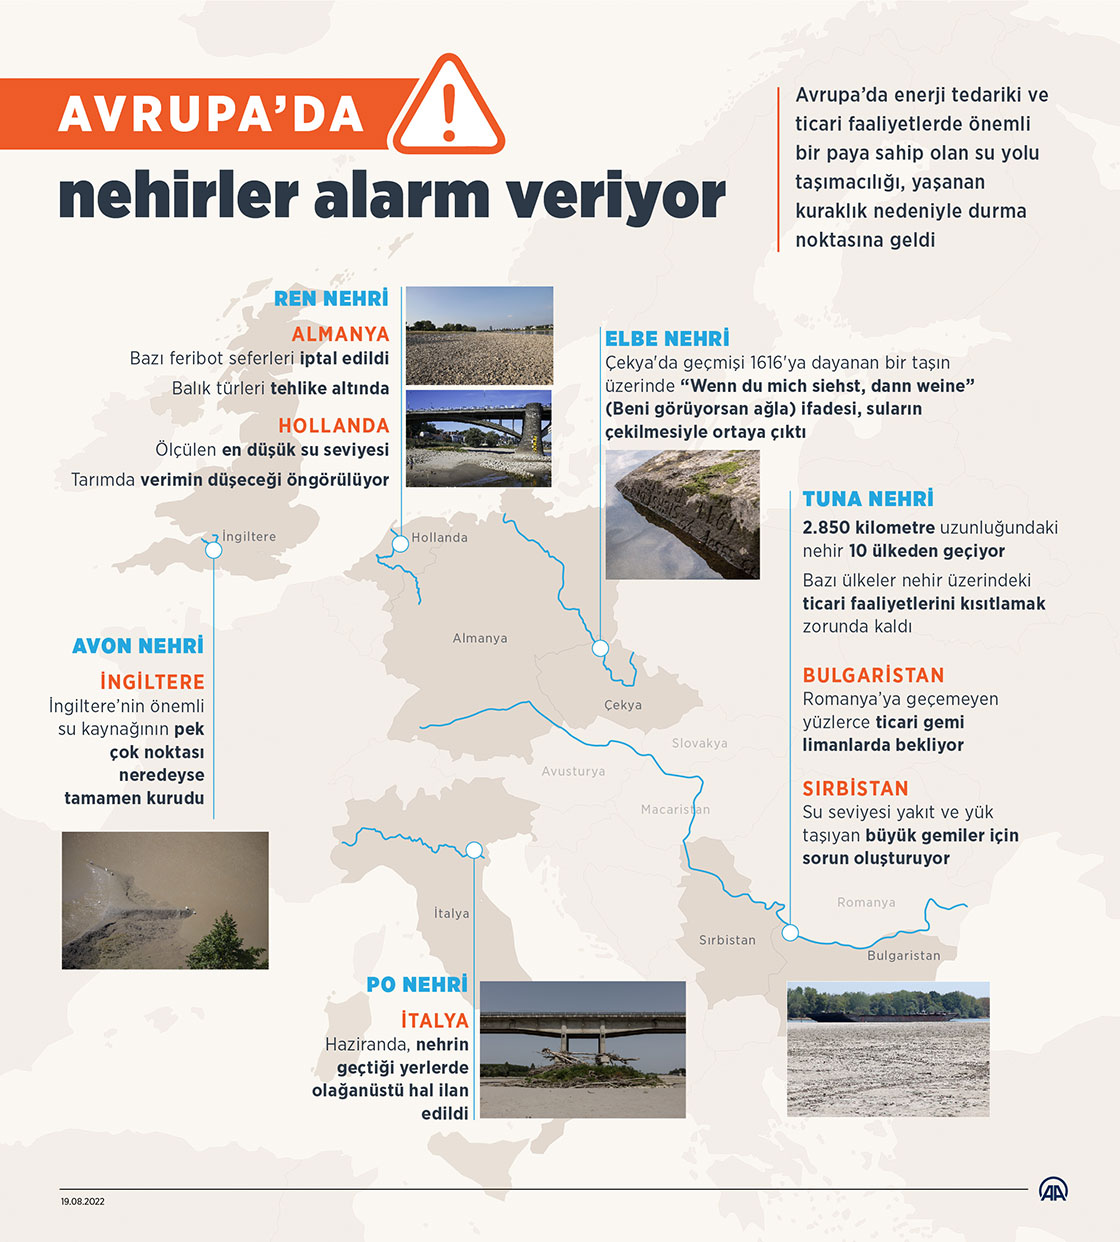 Avrupa’da nehirler alarm veriyor